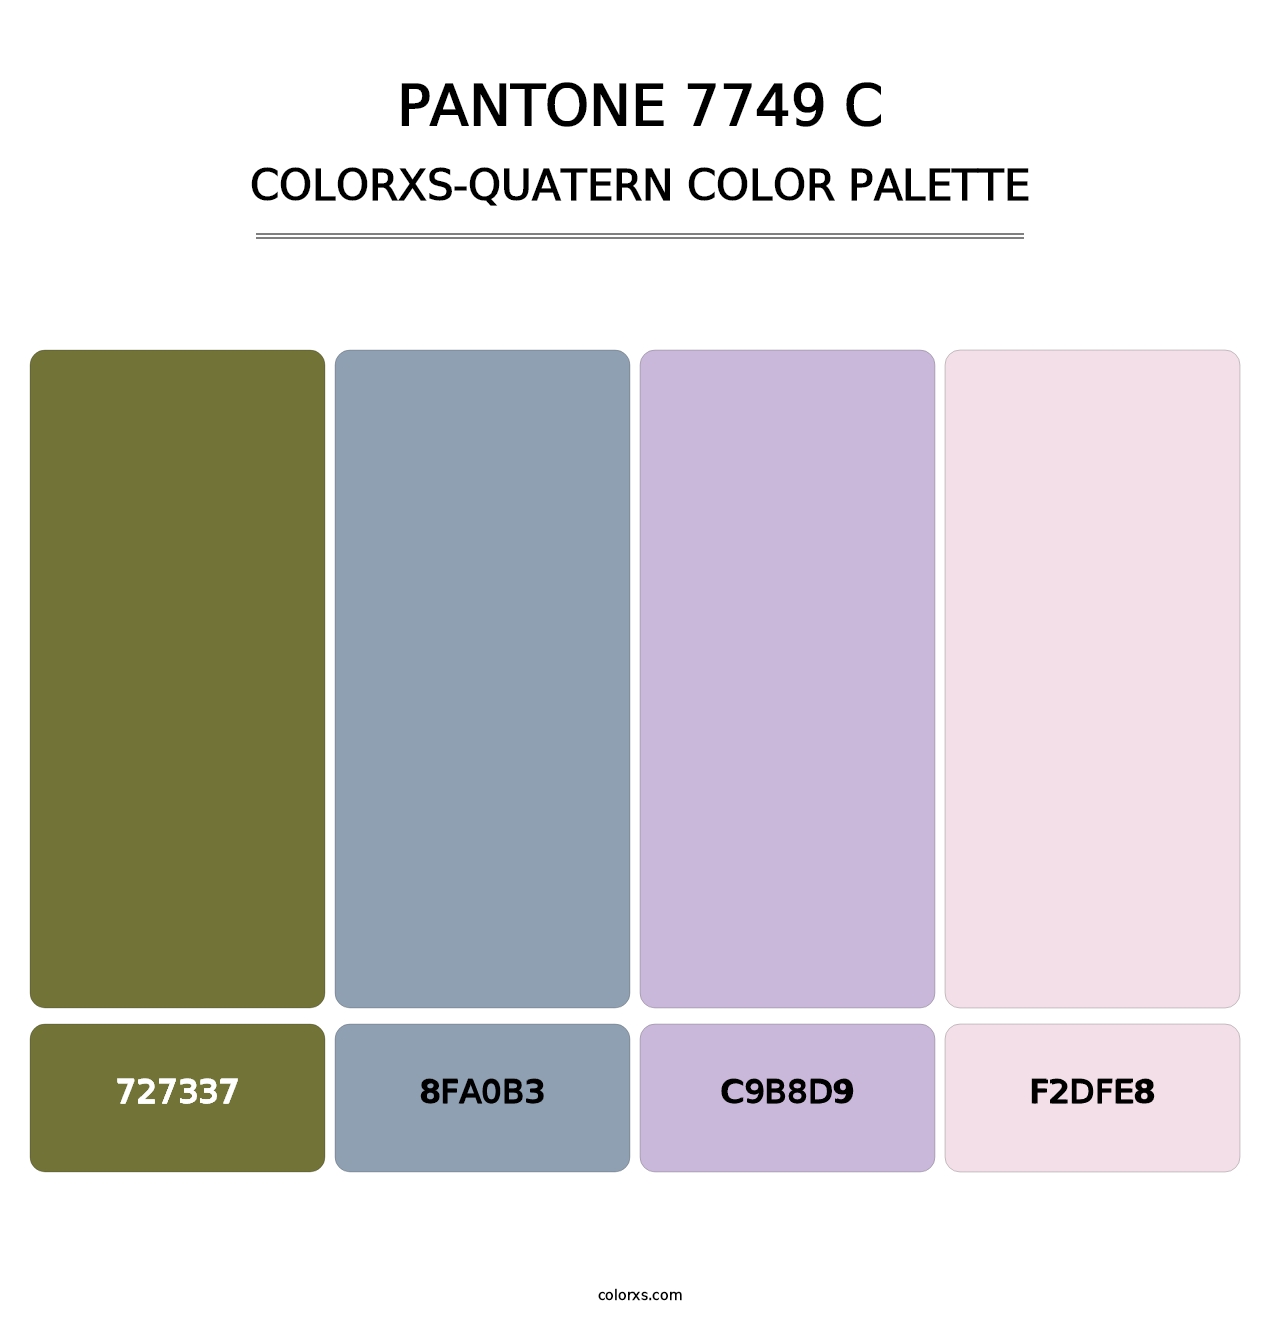 PANTONE 7749 C - Colorxs Quatern Palette